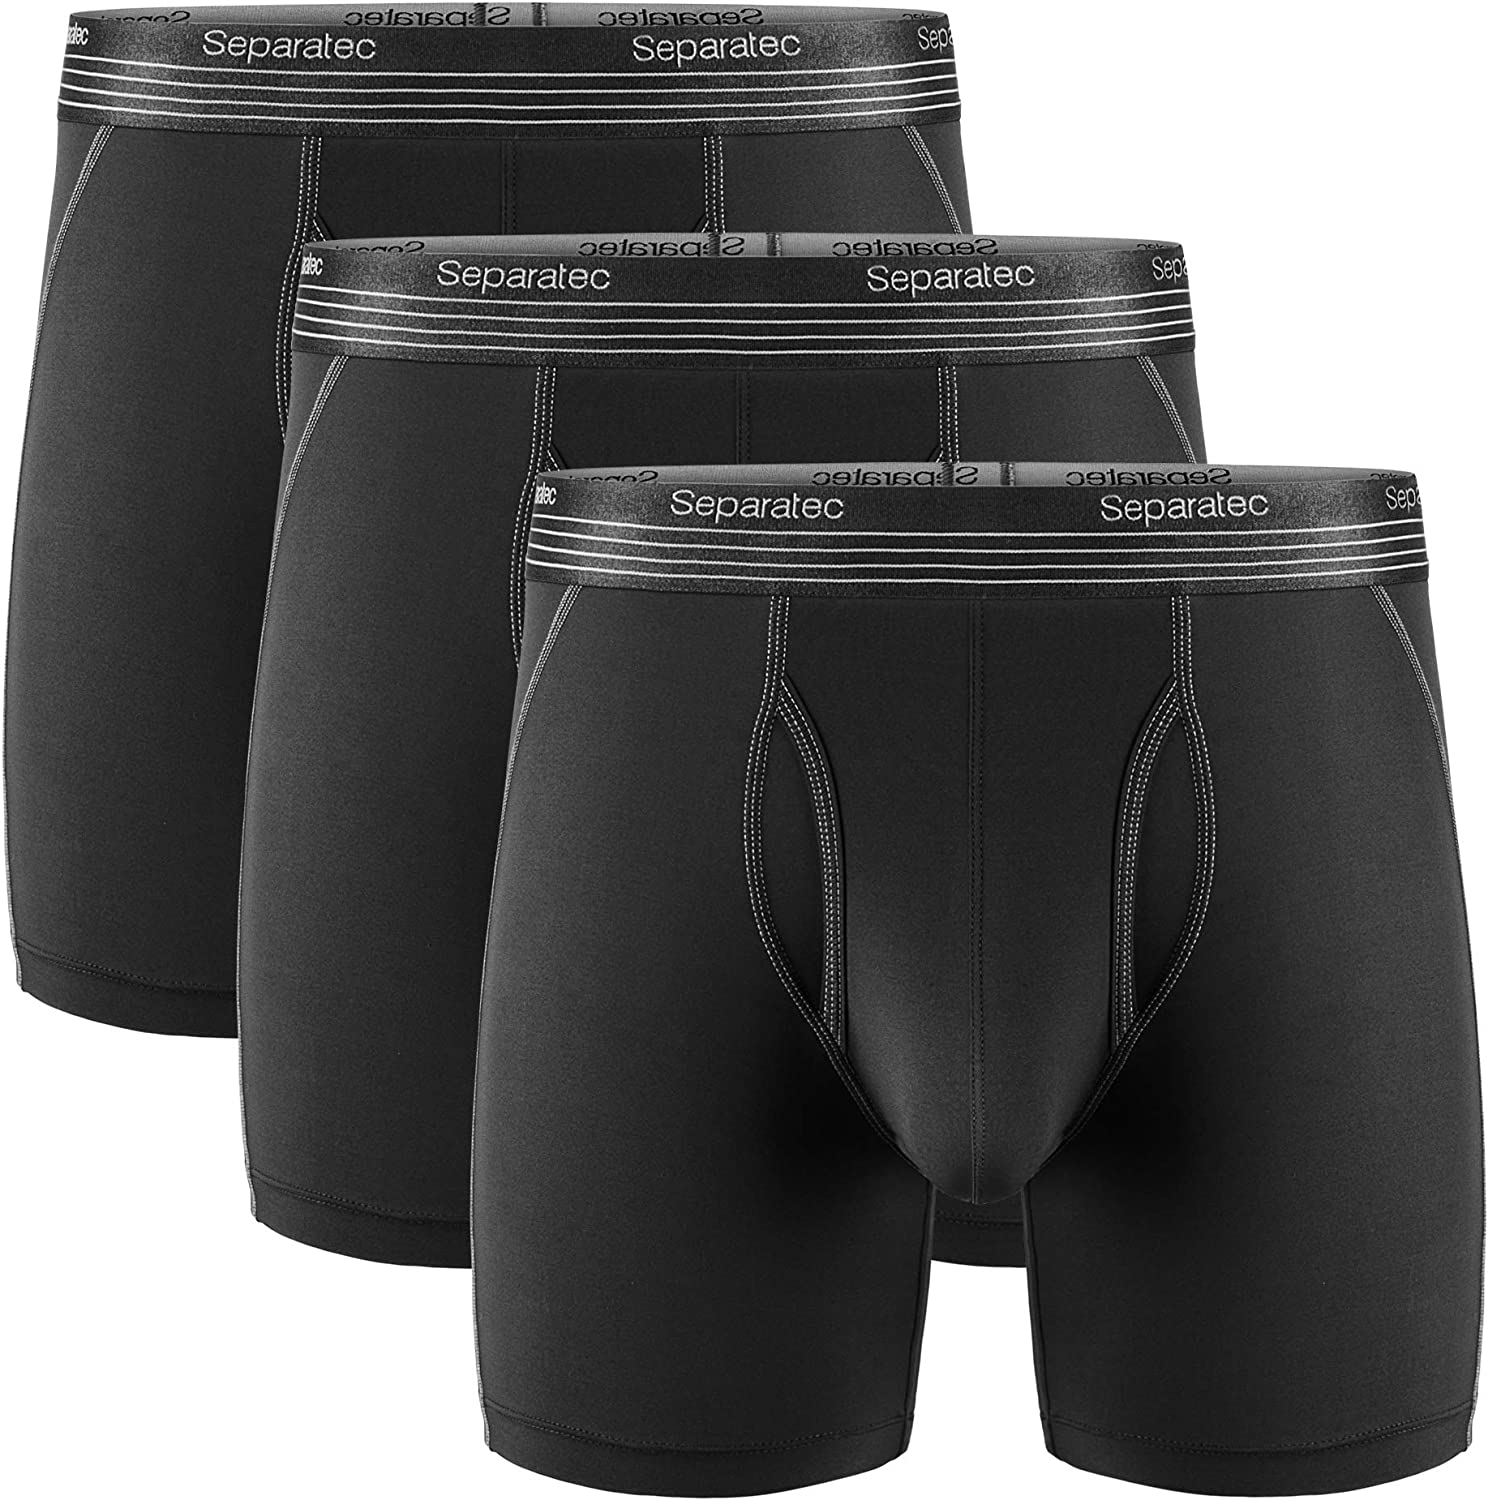 Separatec Men's Dual Pouch Underwear Lightweight Sport Quick